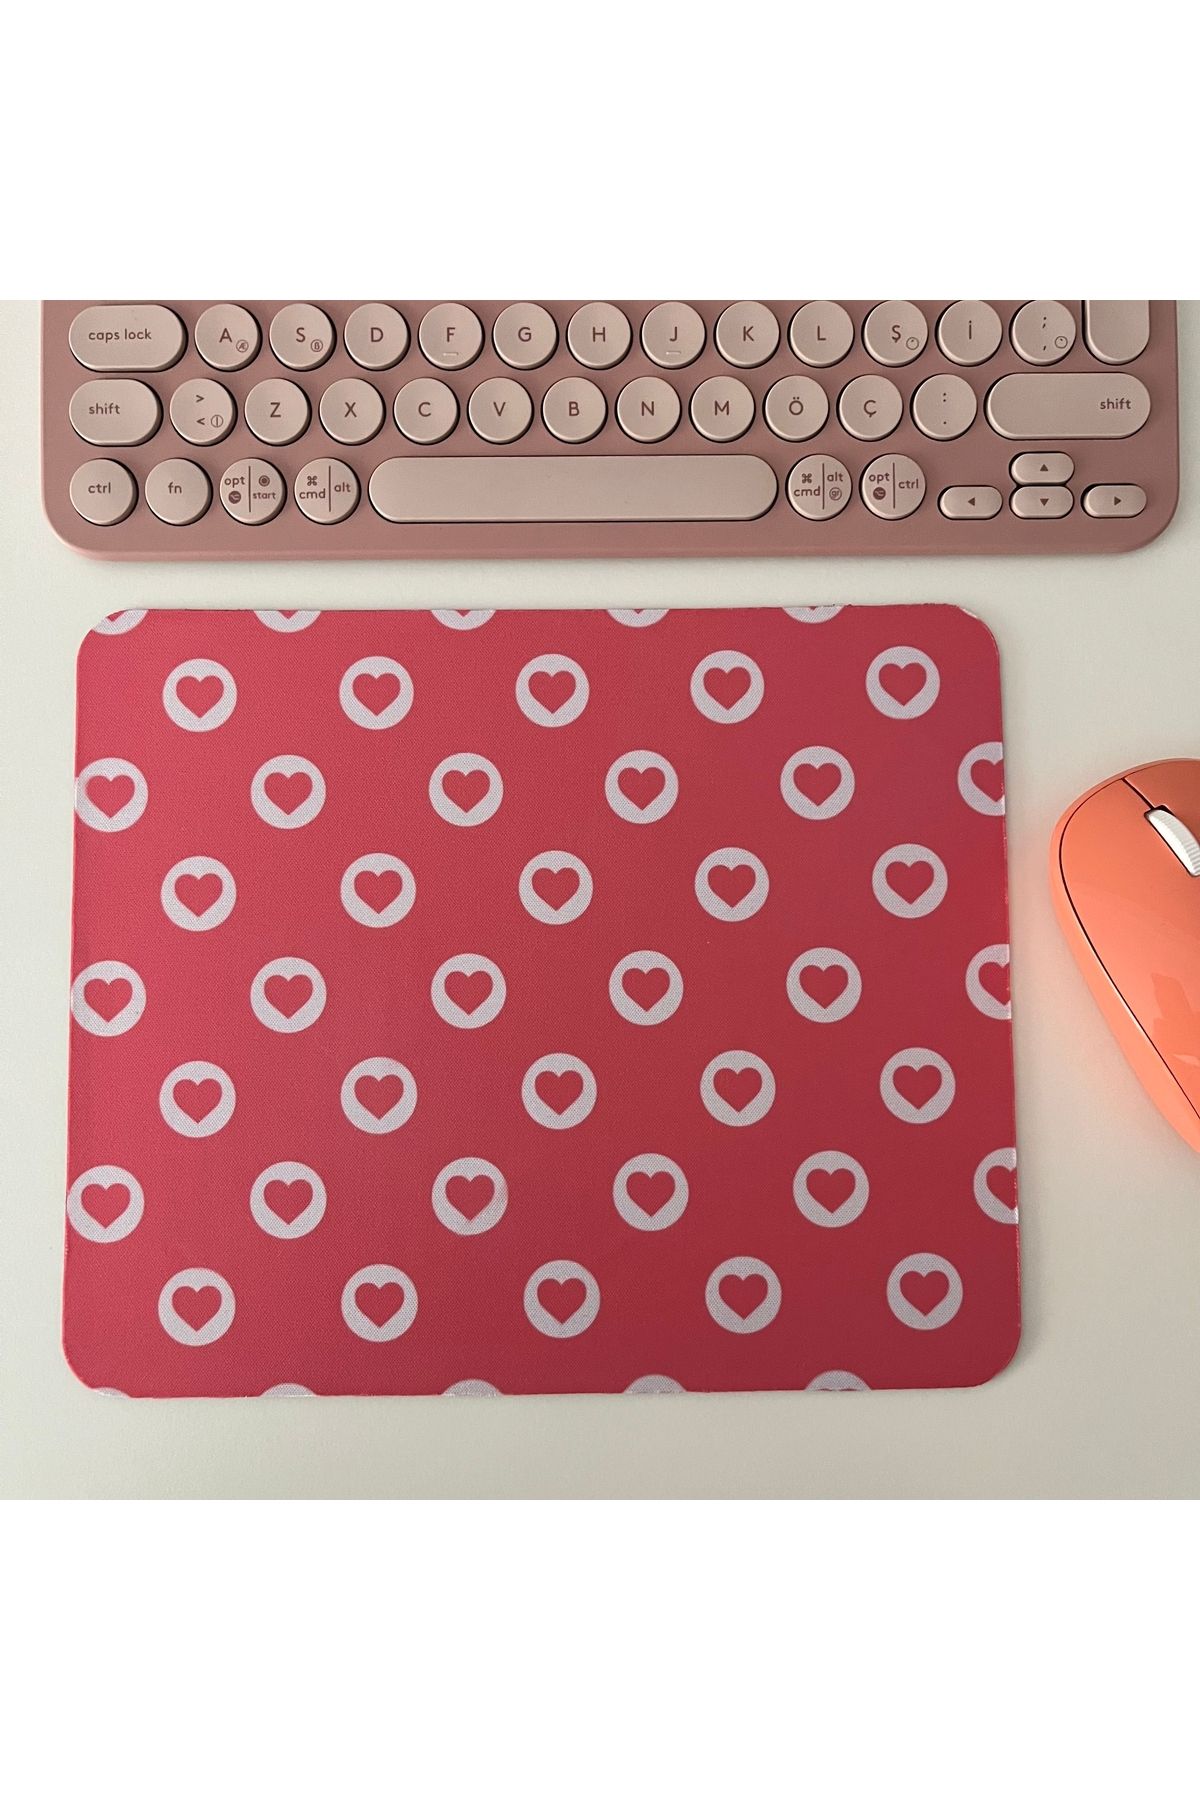 Duxy Kalp Mouse Pad, 23x19 cm, Kaymaz Taban, Ev, Ofis ve Oyun için Rahat ve Yumuşak Mousepad